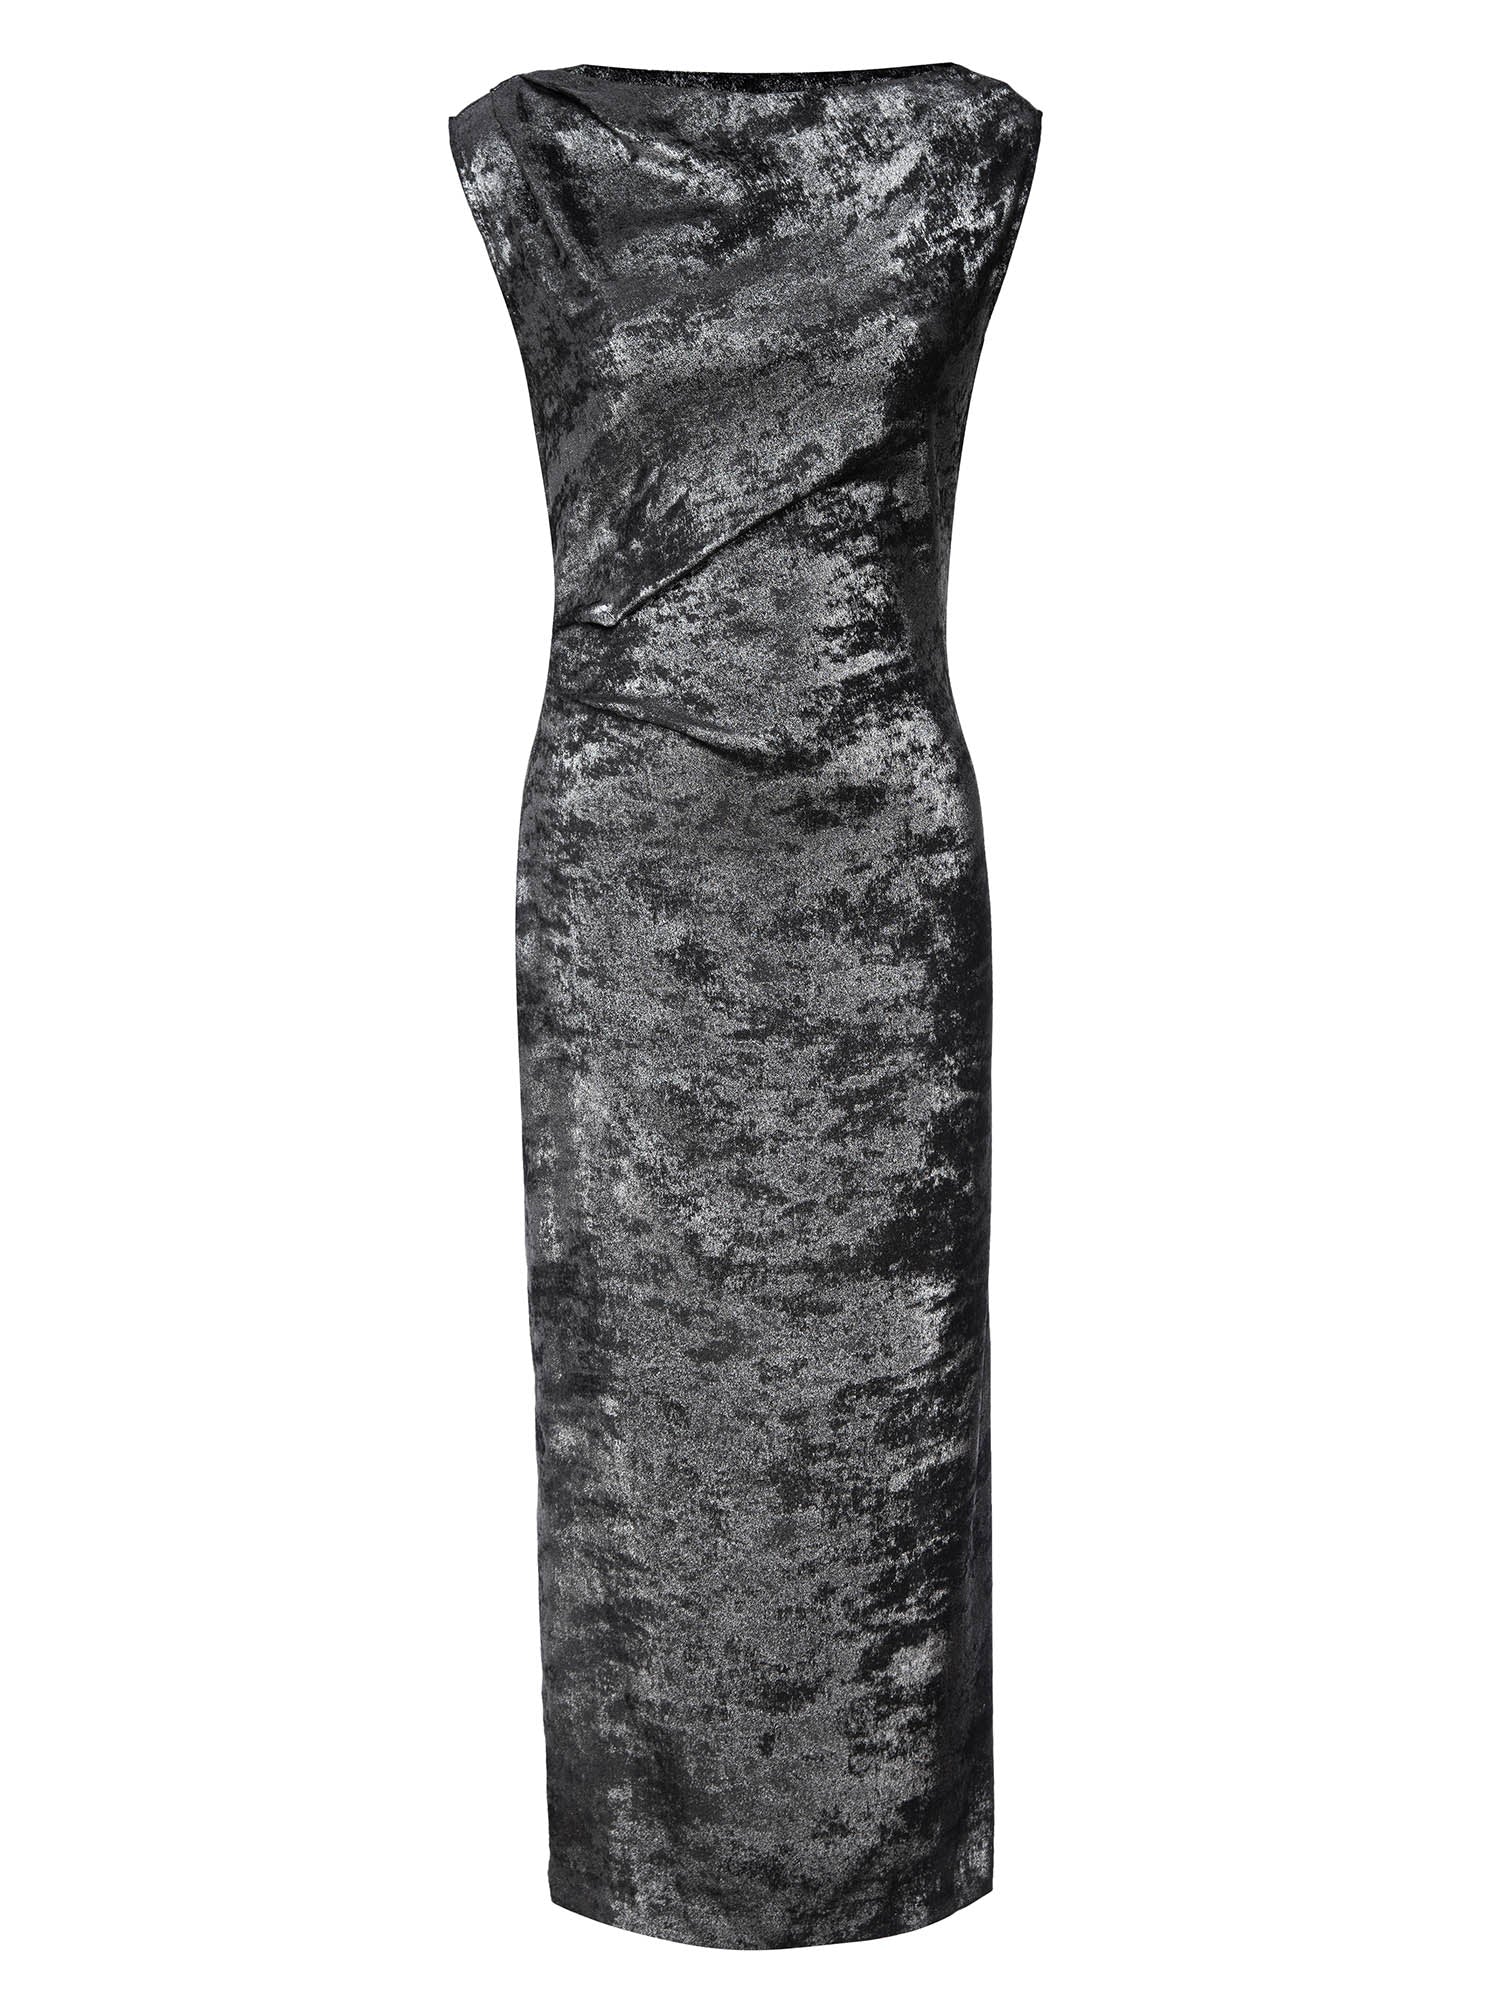 Women's Trey Draped Waist Dress in Galaxy Silver